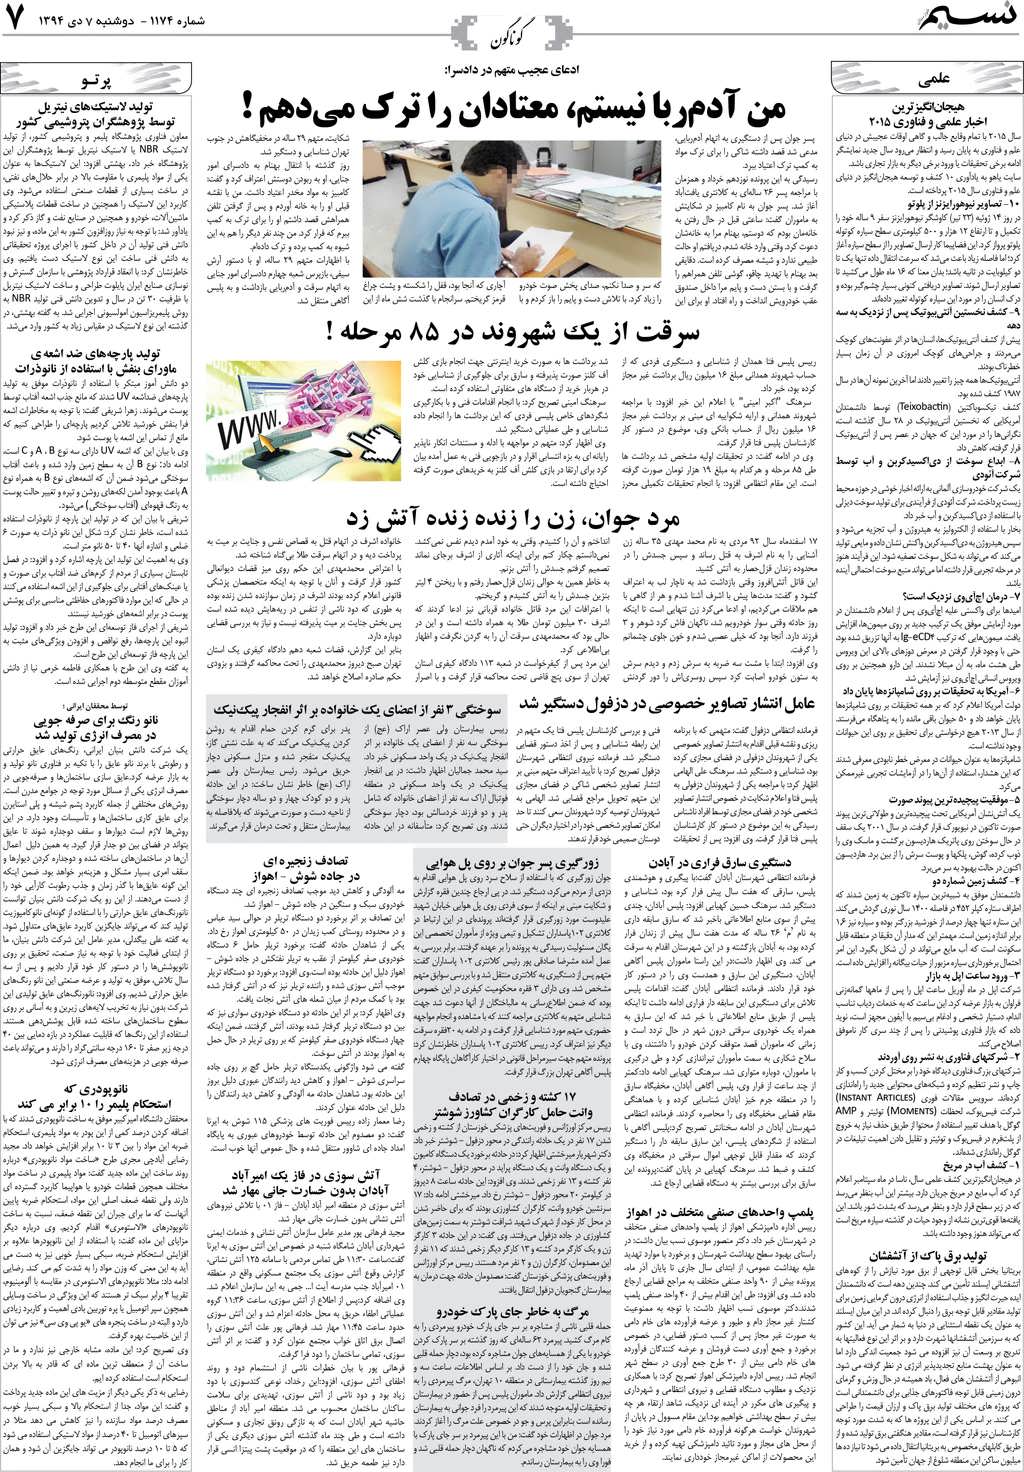 صفحه گوناگون روزنامه نسیم شماره 1174